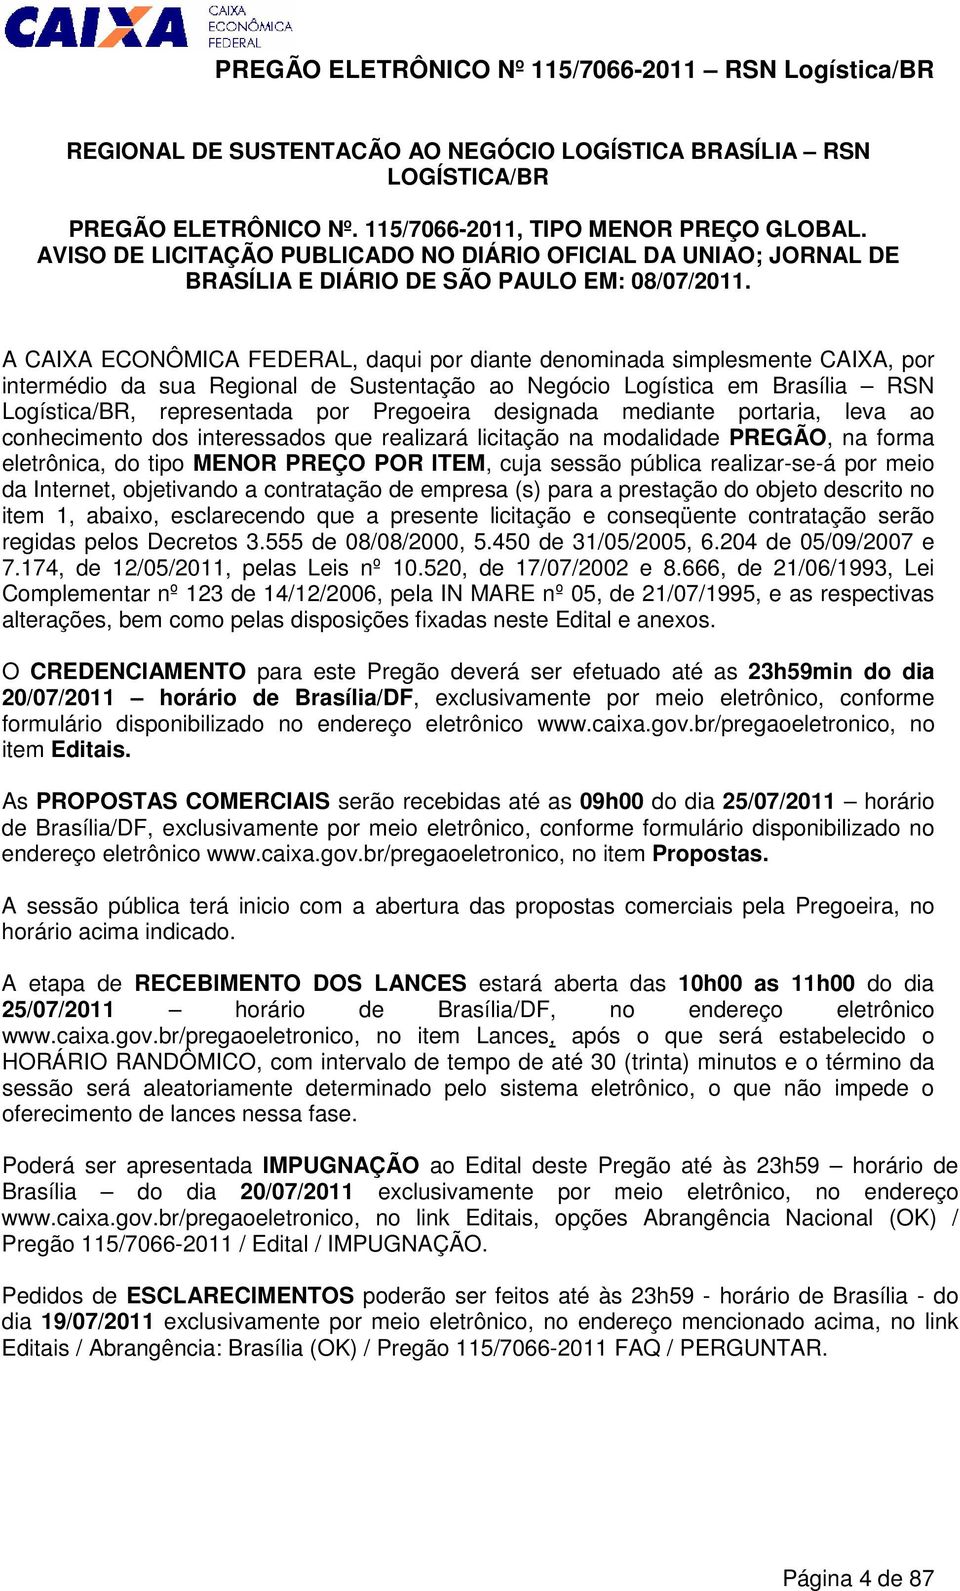 A CAIXA ECONÔMICA FEDERAL, daqui por diante denominada simplesmente CAIXA, por intermédio da sua Regional de Sustentação ao Negócio Logística em Brasília RSN Logística/BR, representada por Pregoeira